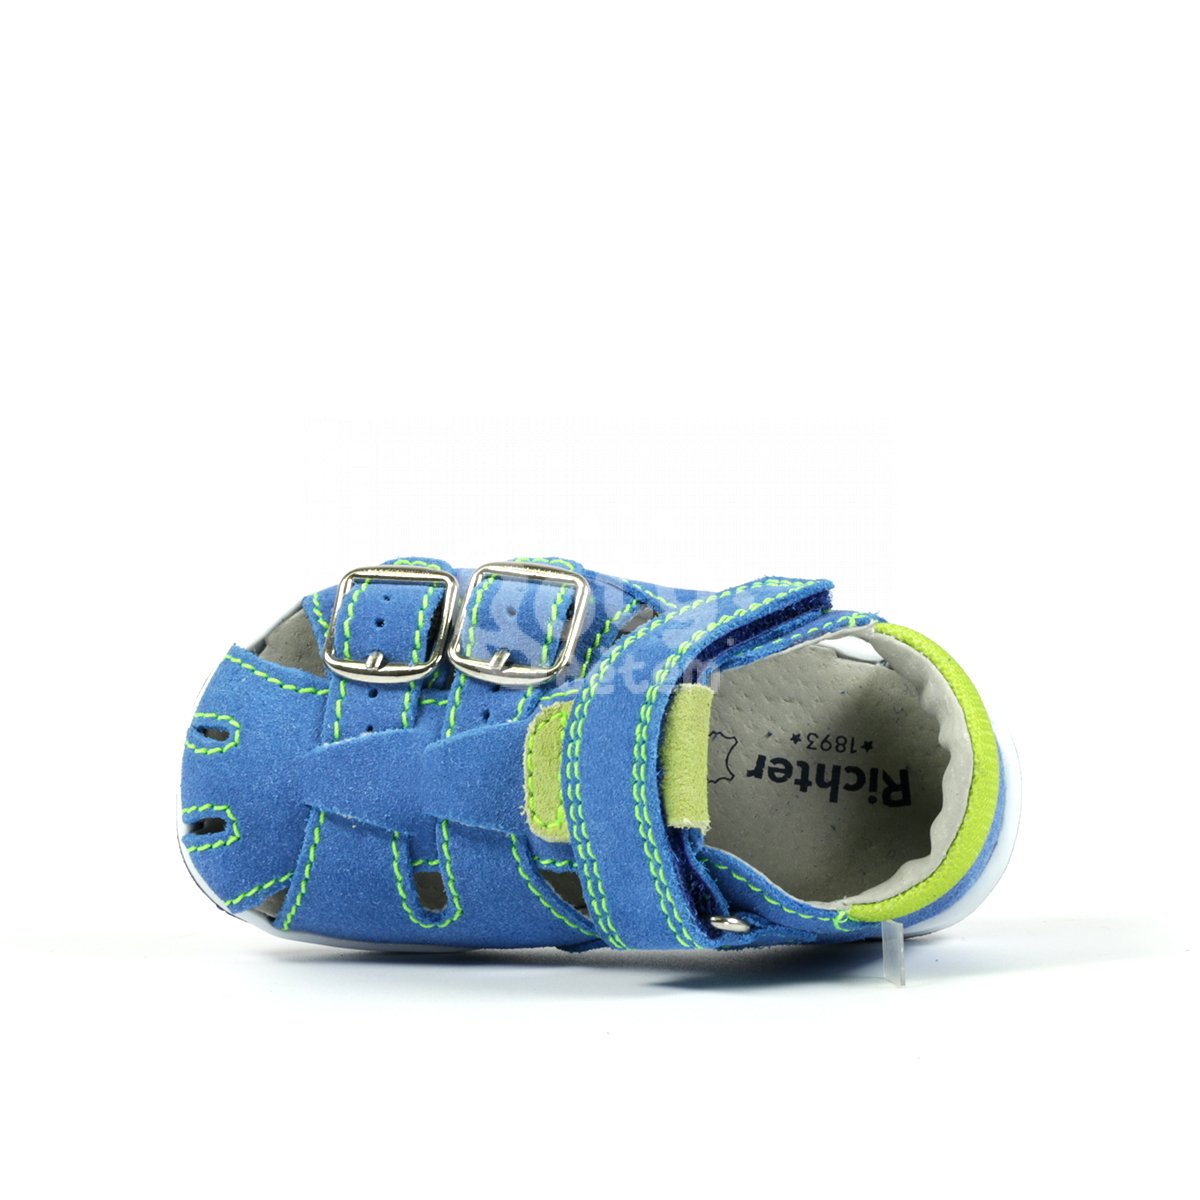 Kožené sandálky Richter 2801-3111-6731 modrá